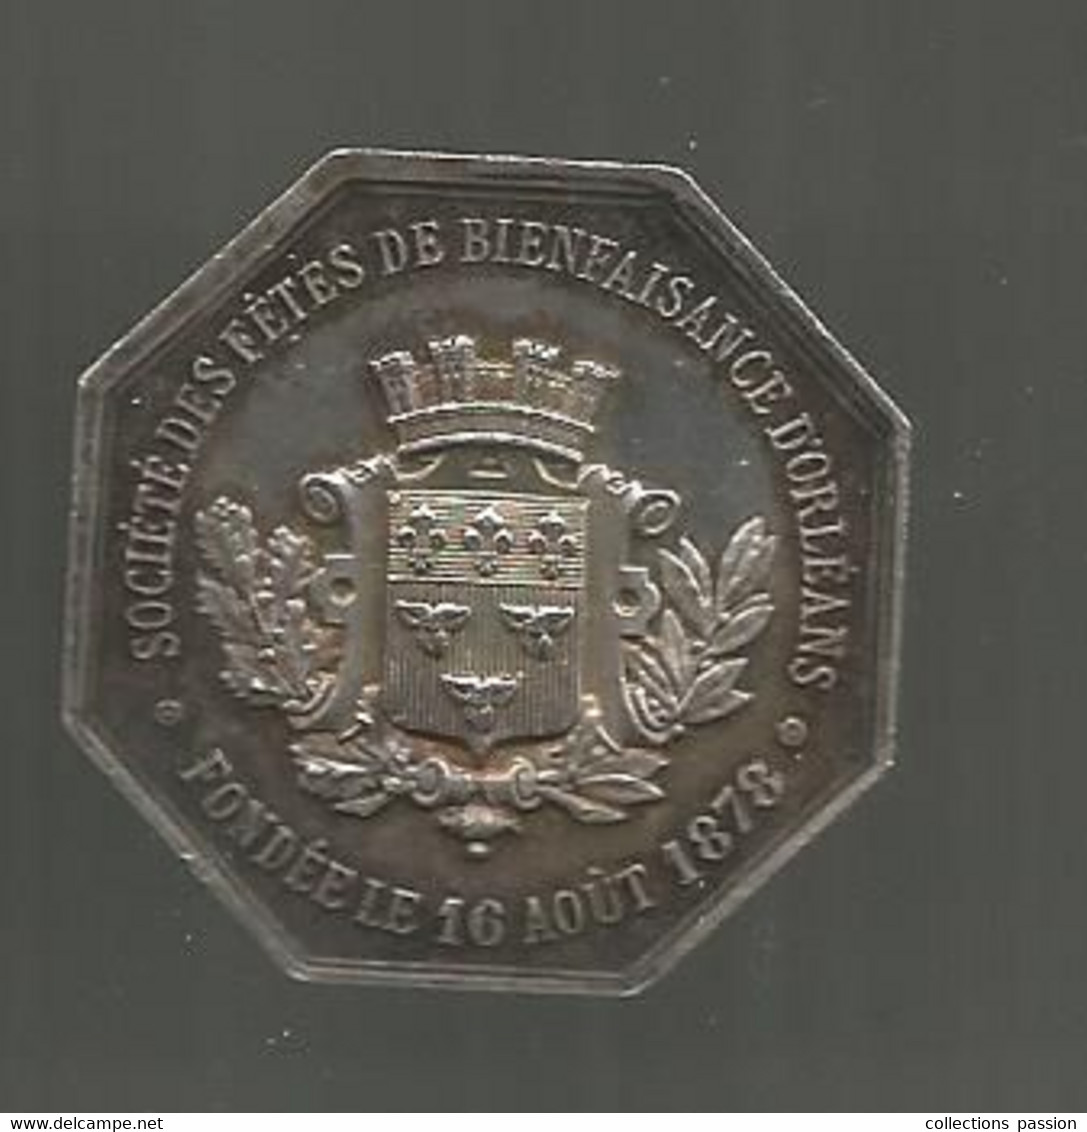 Jeton Argent, Société Des Fêtes De Bienfaisance D'ORLEANS Fondée Le 16 Août 1878, 2 Scans, 33 X 33 Mm - Professionals/Firms